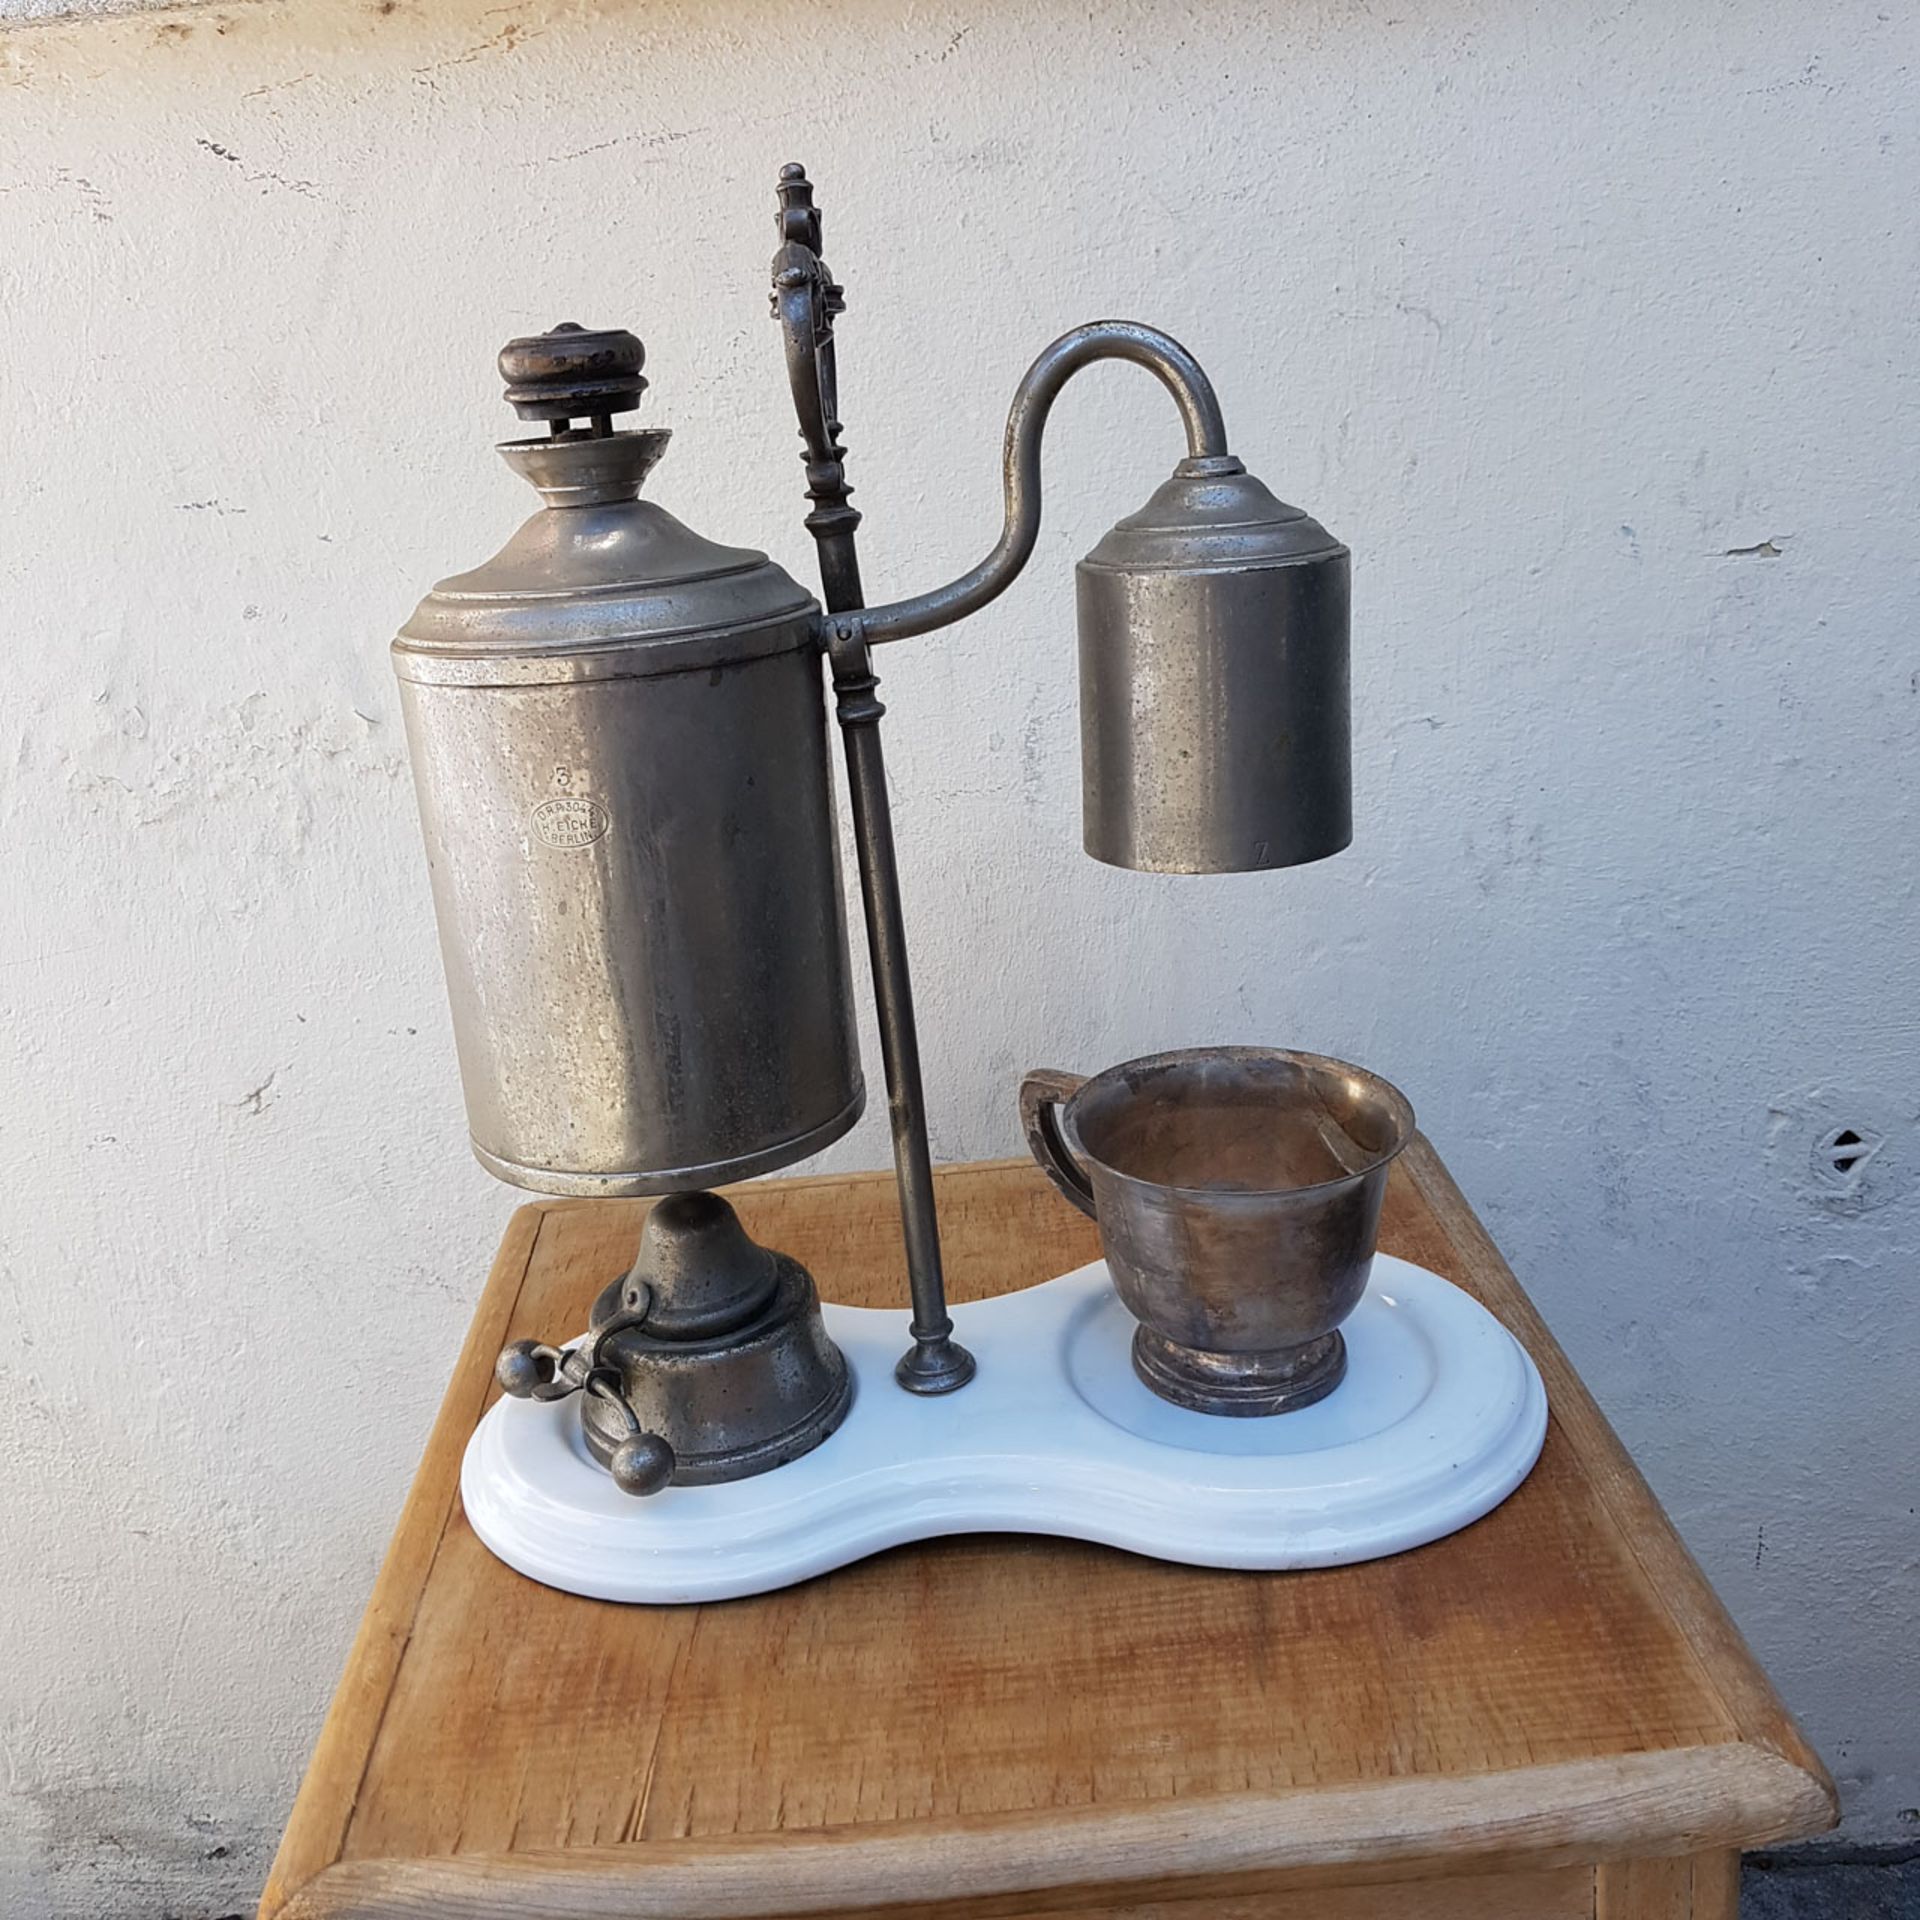 Museale Kaffeemaschine, uralt, H: 38 cm; Becher gehört ursprünglich nicht dazu, jedoch alt. - Bild 5 aus 6